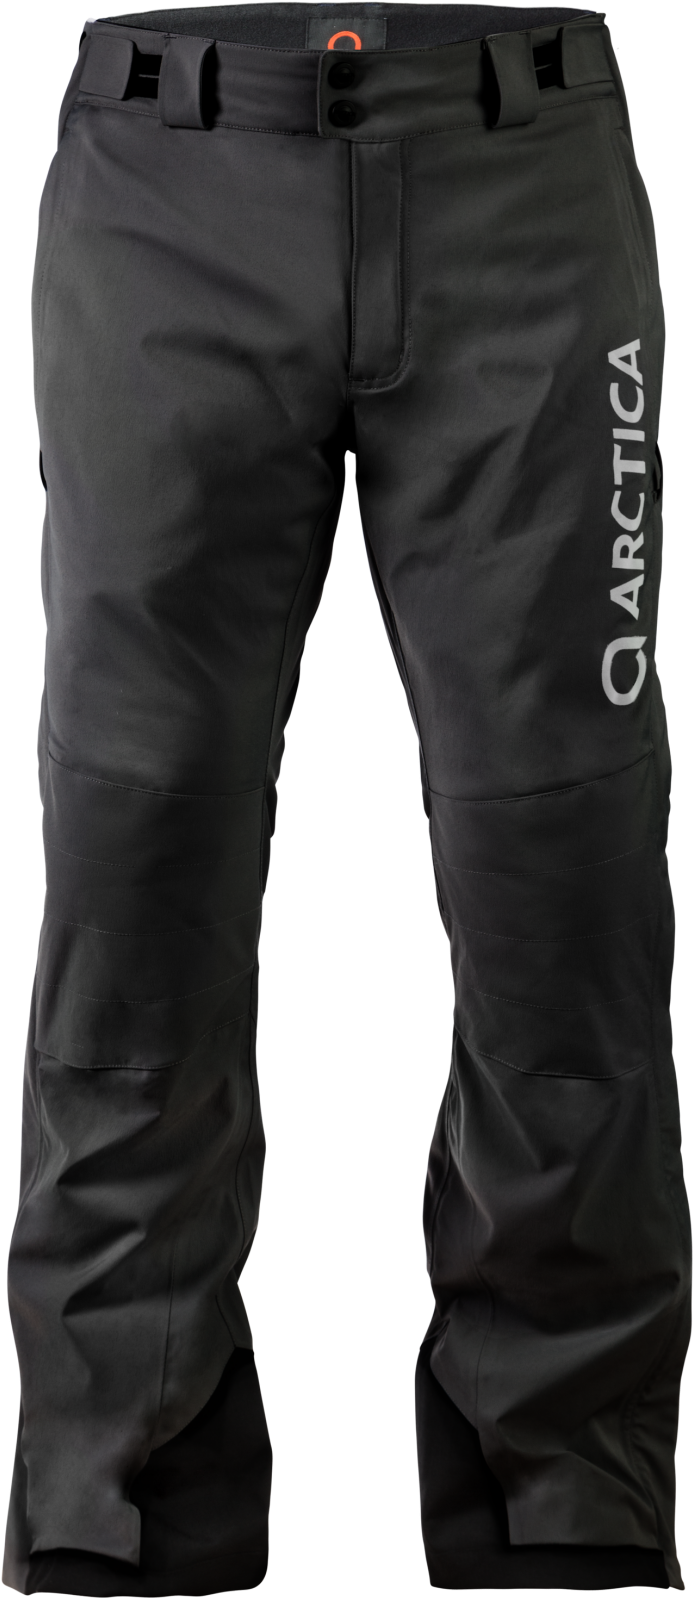 Black Arctica Ski Pants PNG